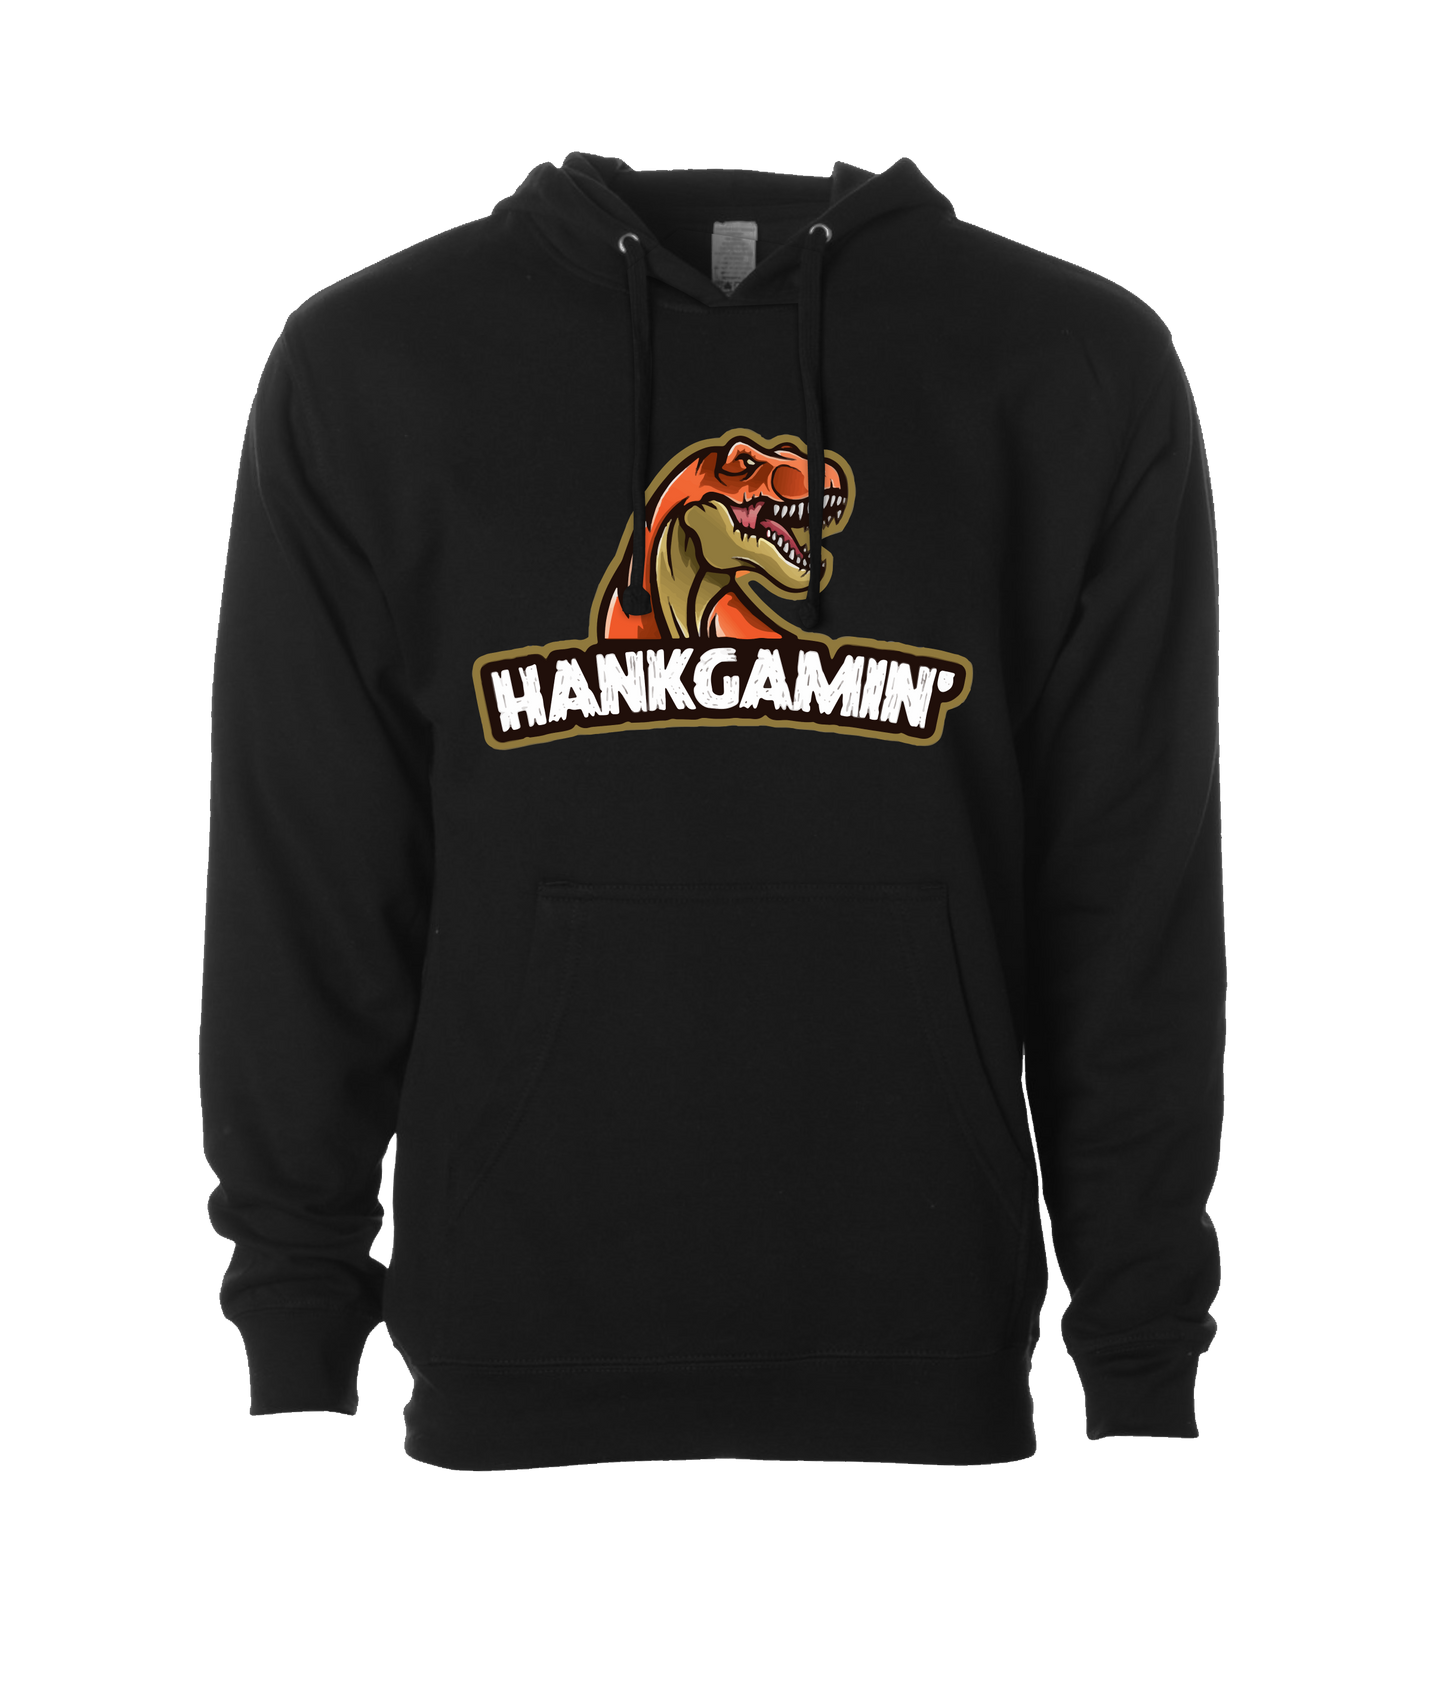 Hank Gamin' - T-Rex Orange - Black Hoodie